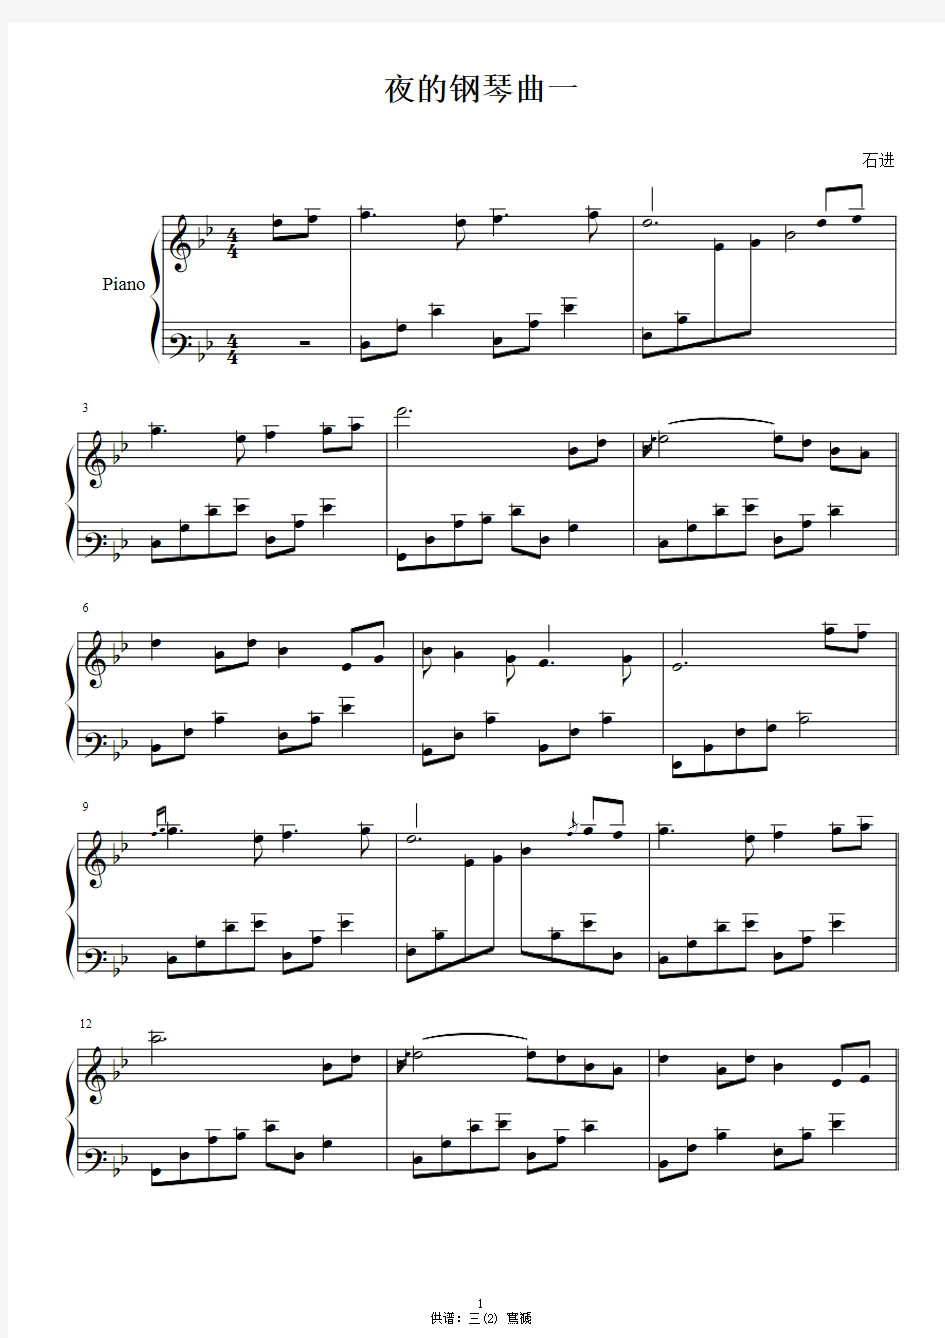 夜的钢琴曲 1-31 原版 五线谱 钢琴谱 正谱